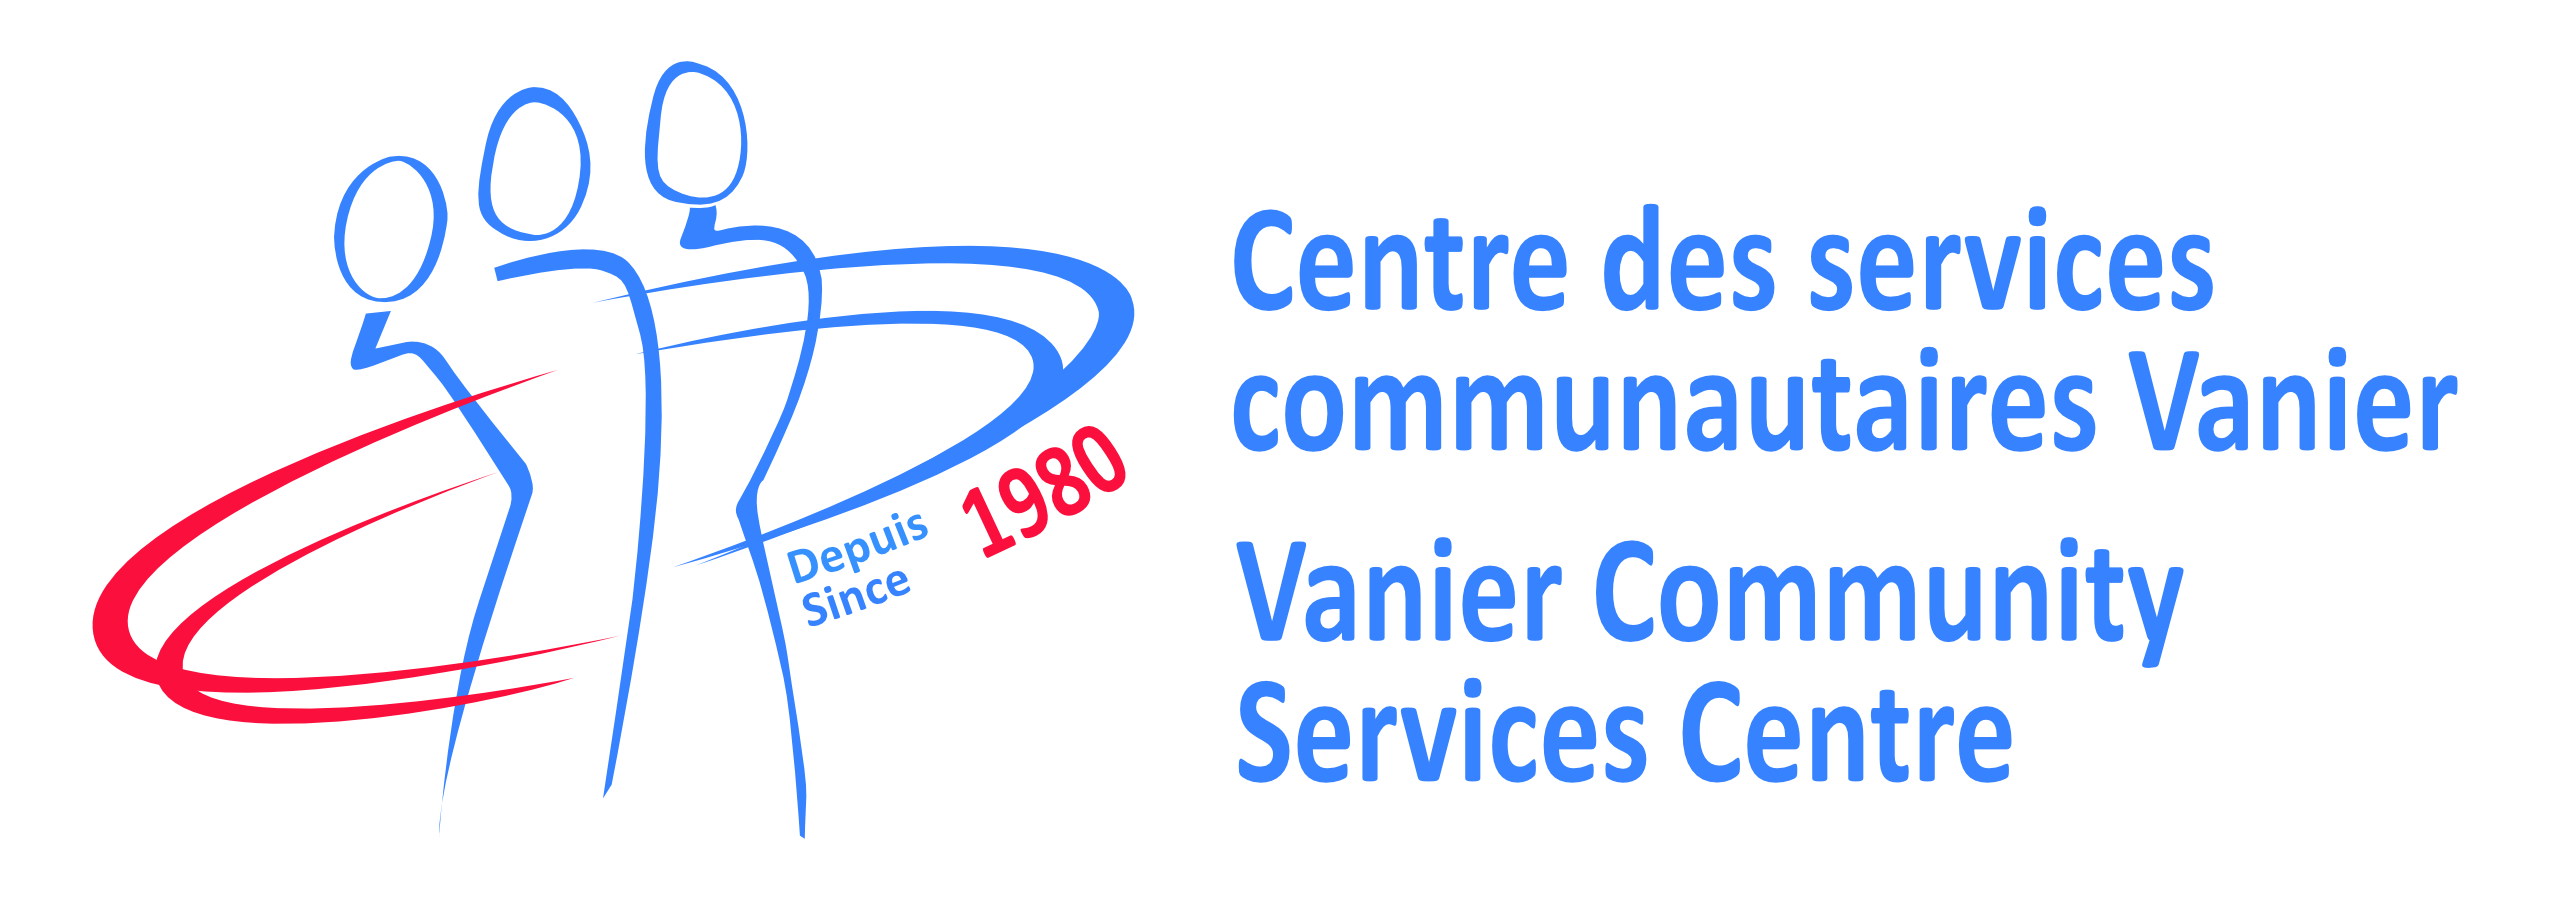 Centre des services communautaires Vanier